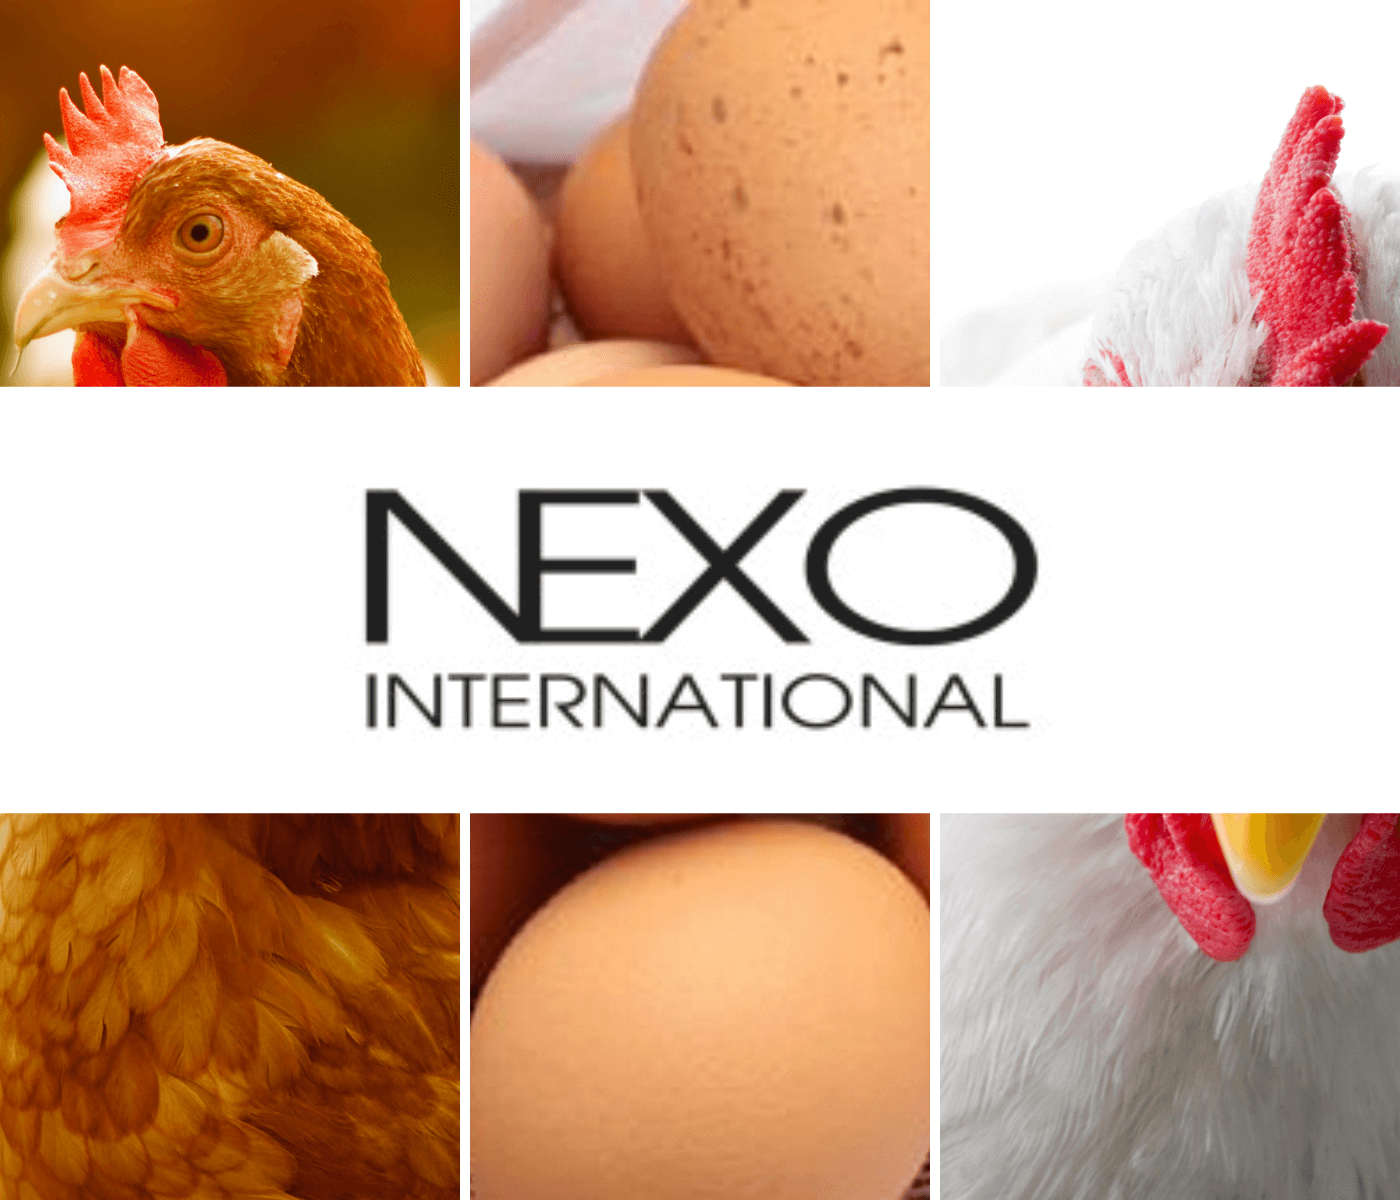 Nexo International impulsiona inovação e sustentabilidade com sua participação no mercado de aditivos para animais